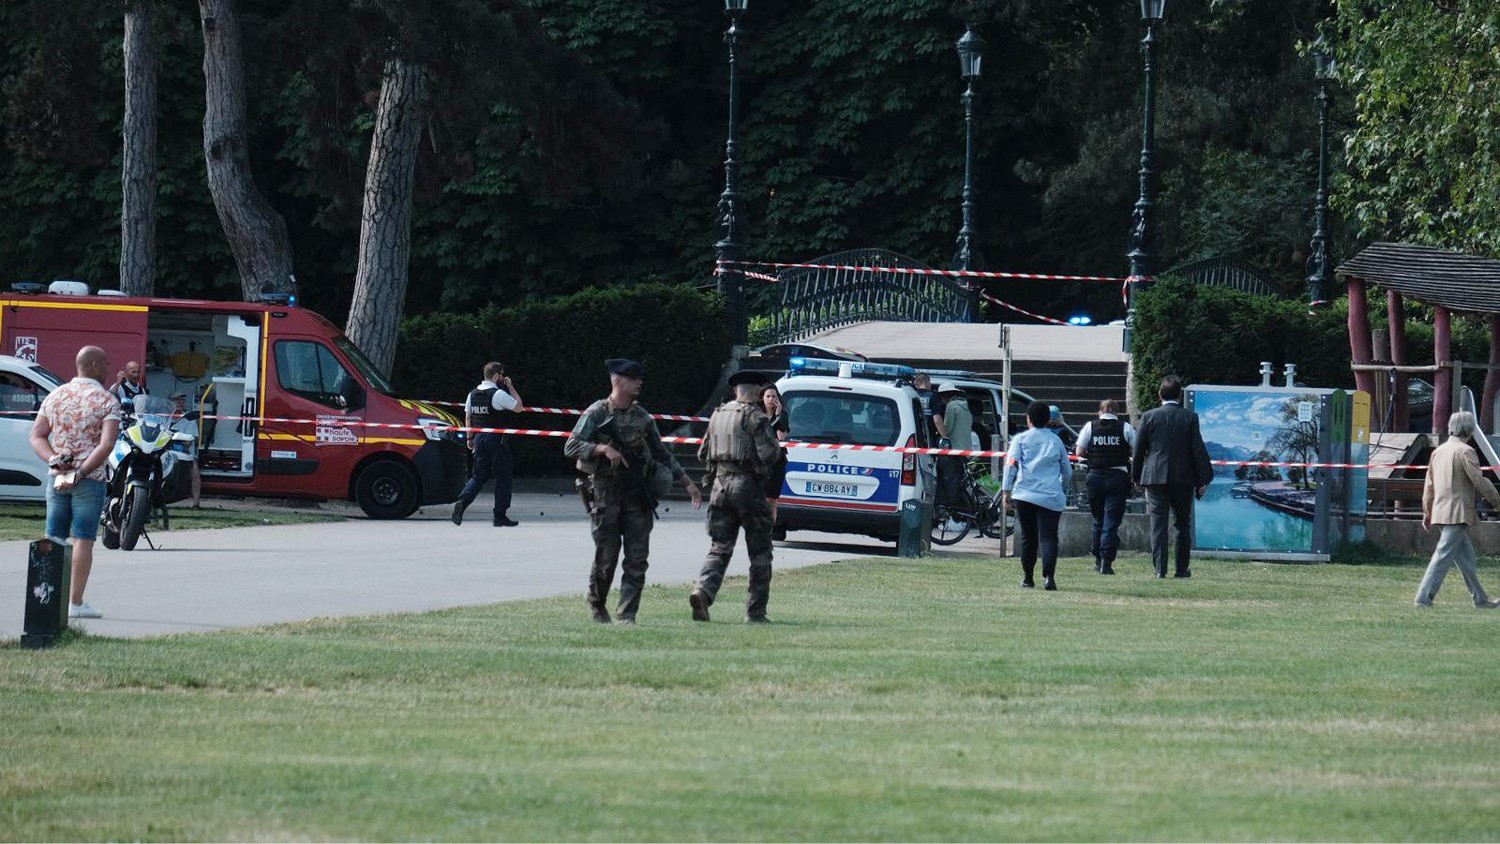 Επίθεση με μαχαίρι σε τρίχρονα παιδιά σε πάρκο στη Γαλλία – Σε κρίσιμη κατάσταση τα τρία